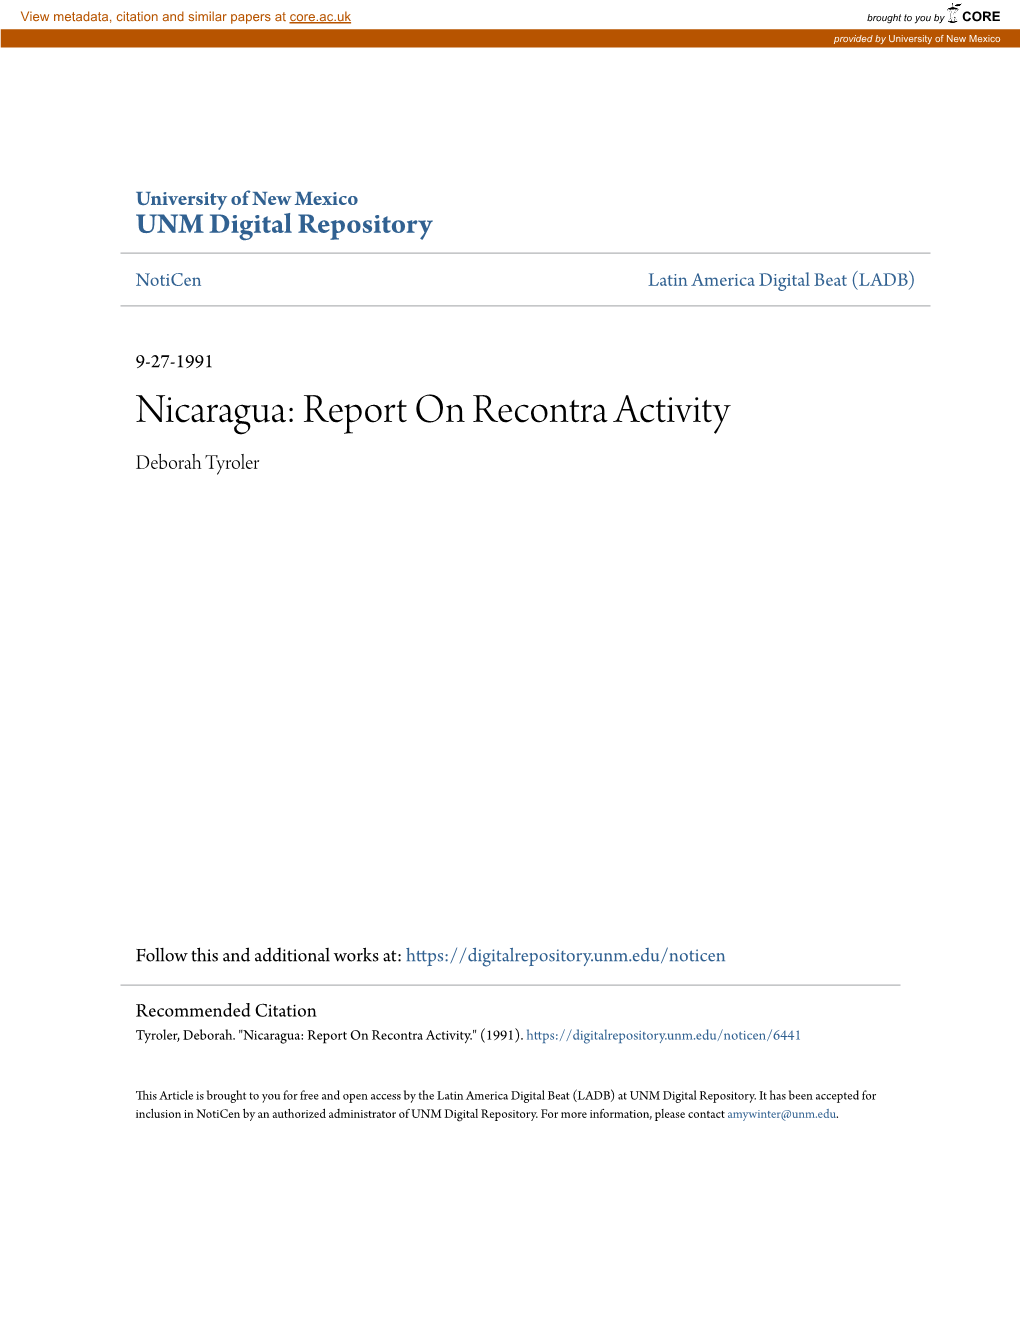 Nicaragua: Report on Recontra Activity Deborah Tyroler